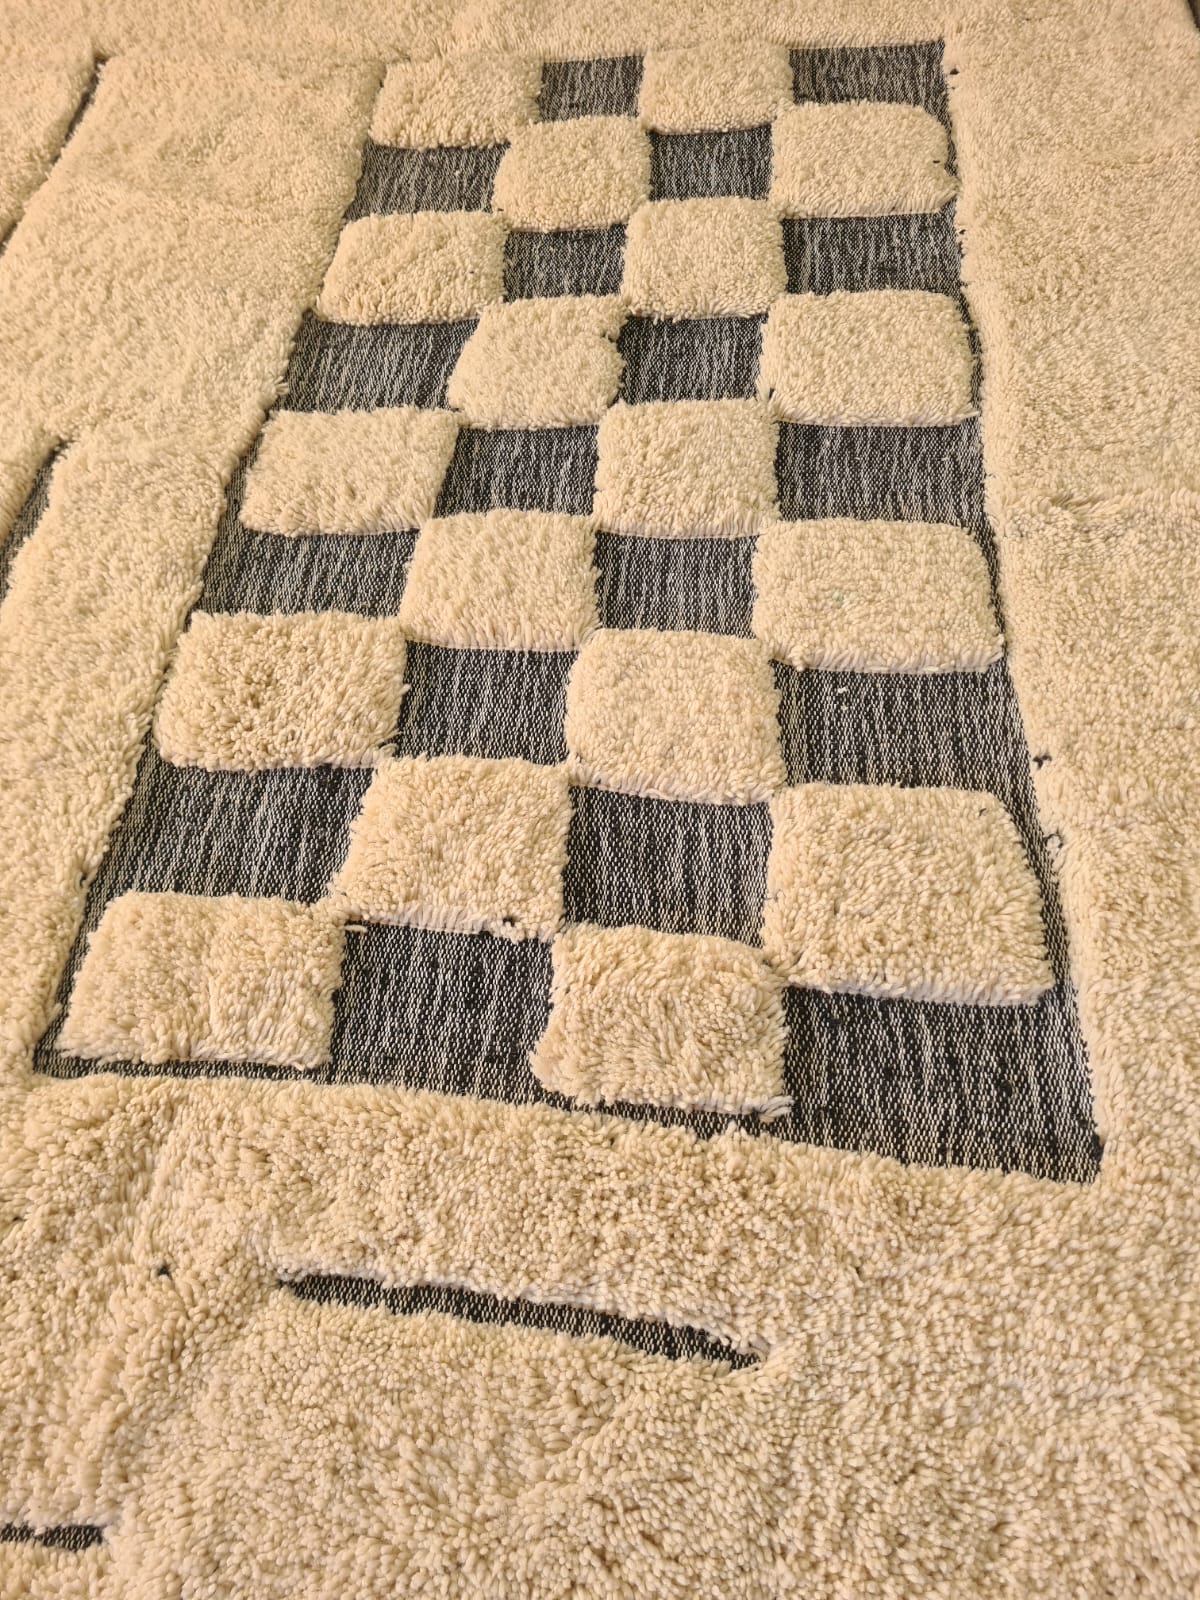 Checkered Board